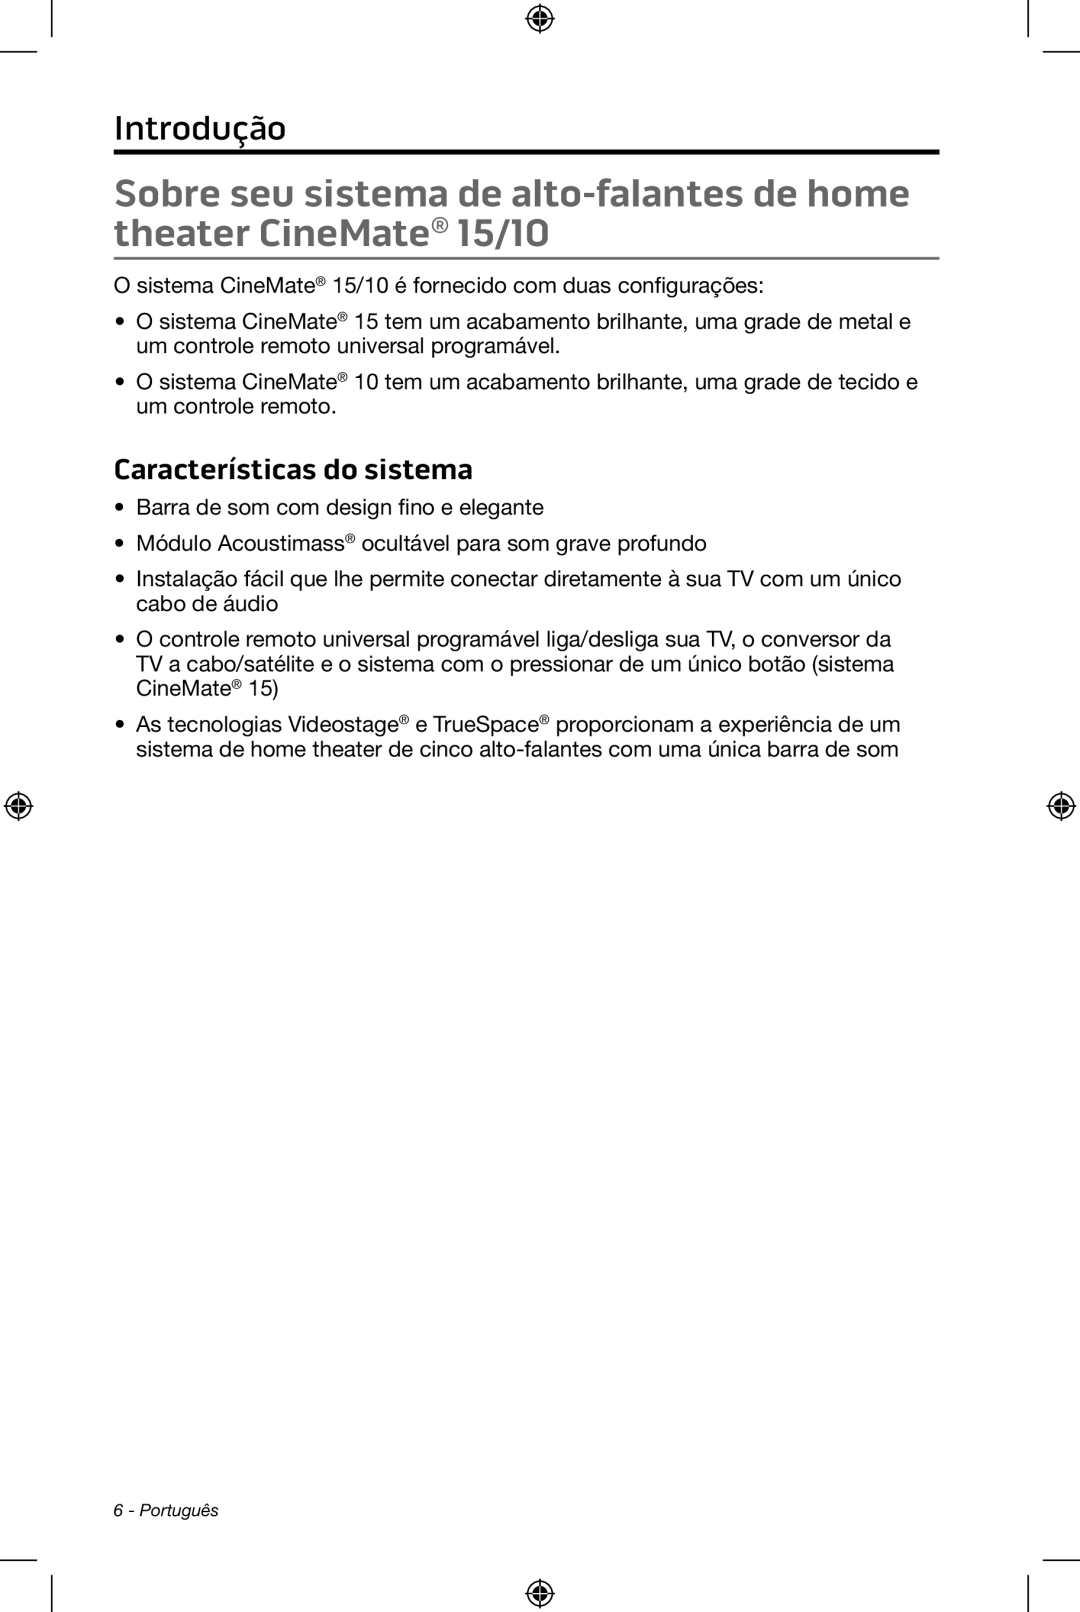 Bose CineMate 15/10 manual Introdução, Características do sistema 